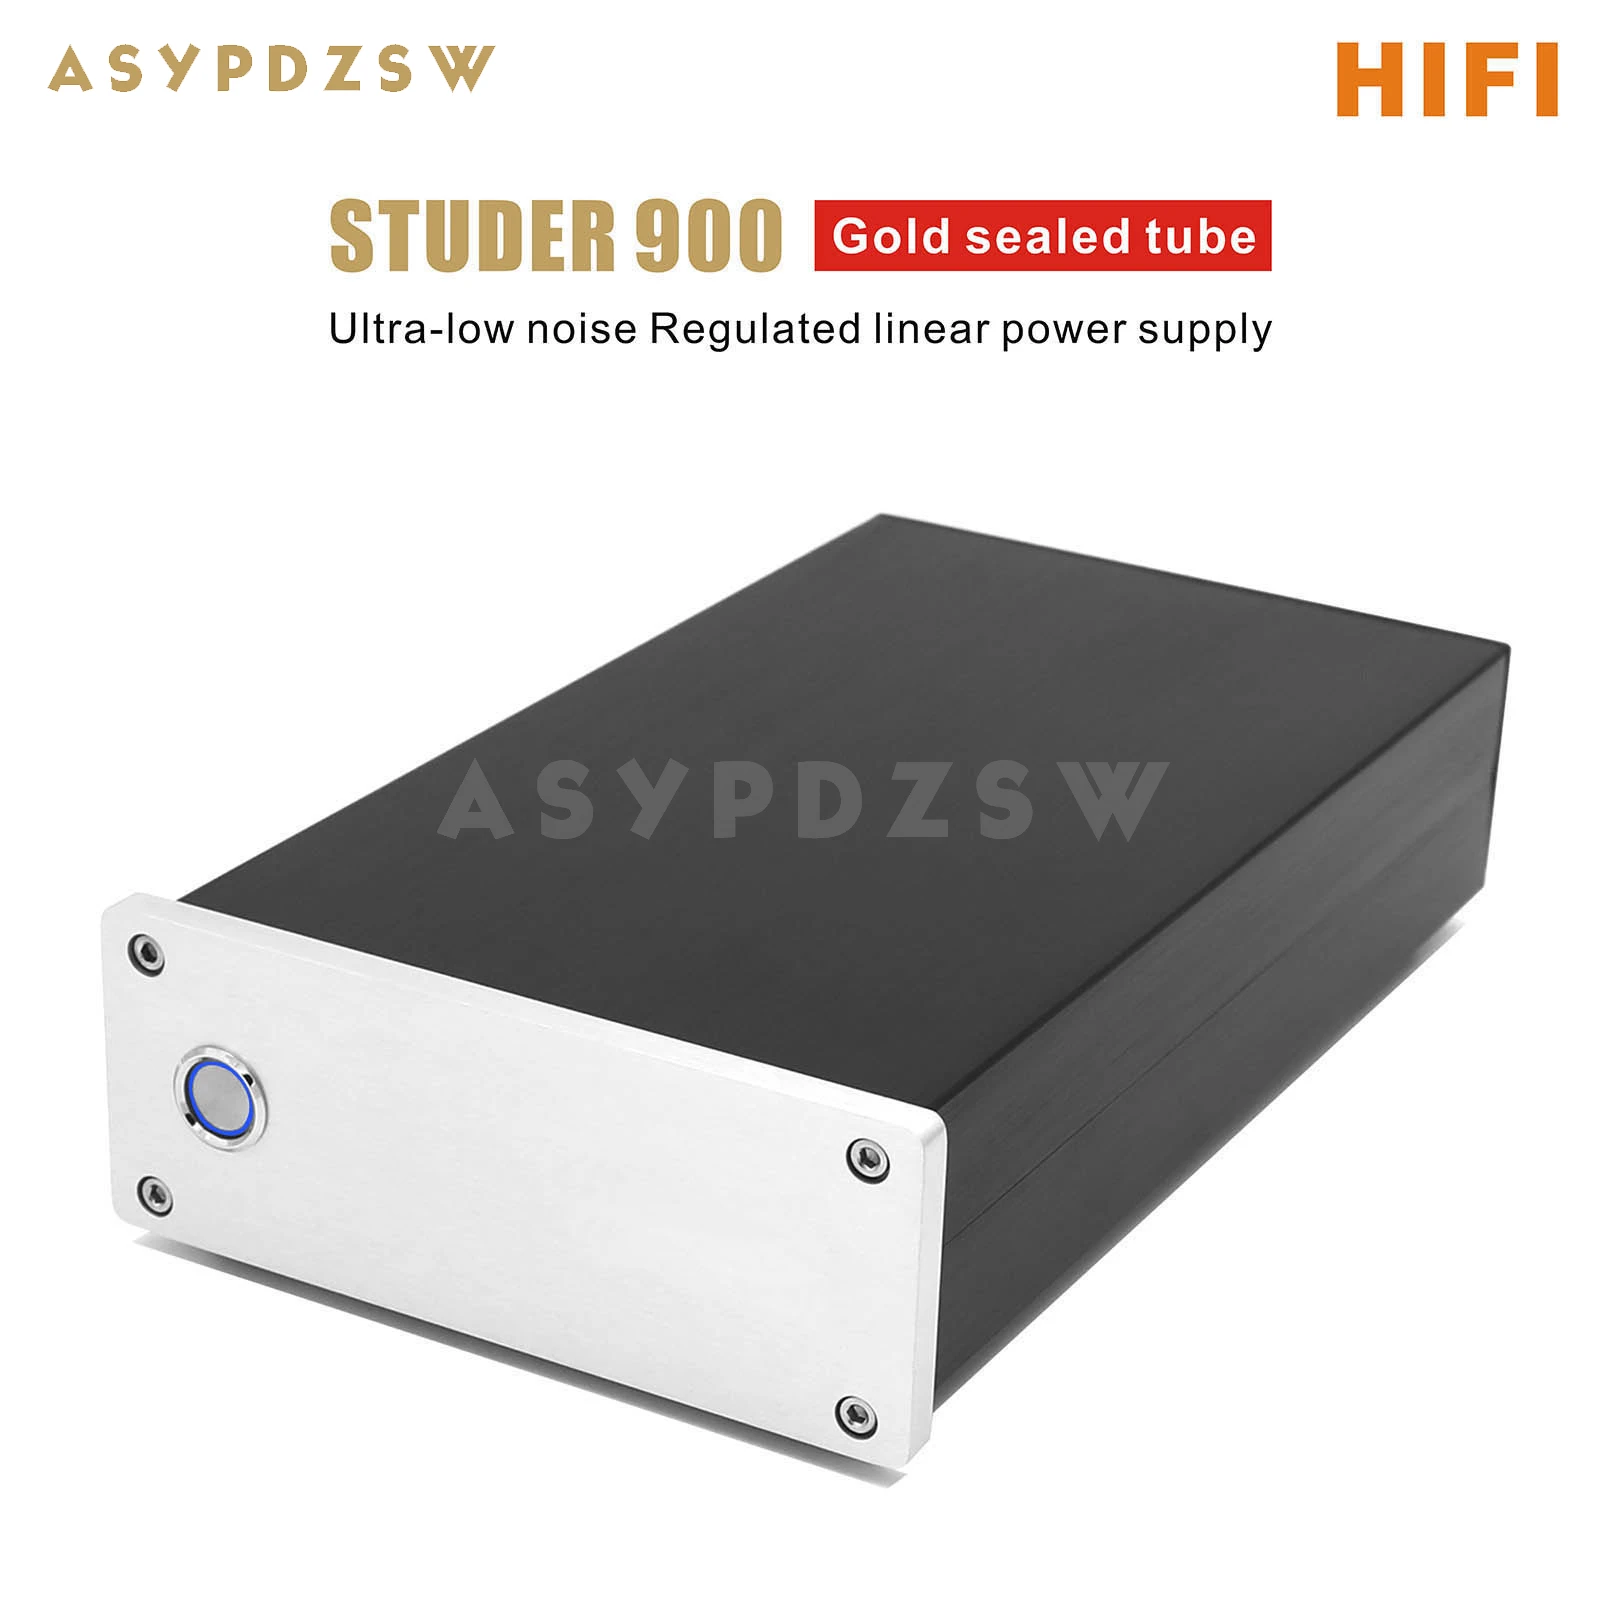 

STUDER 900 HIFI позолоченный ультра-низкий уровень шума Регулируемый Линейный источник питания для предусилителя/DAC DC 5-24 В (опционально)